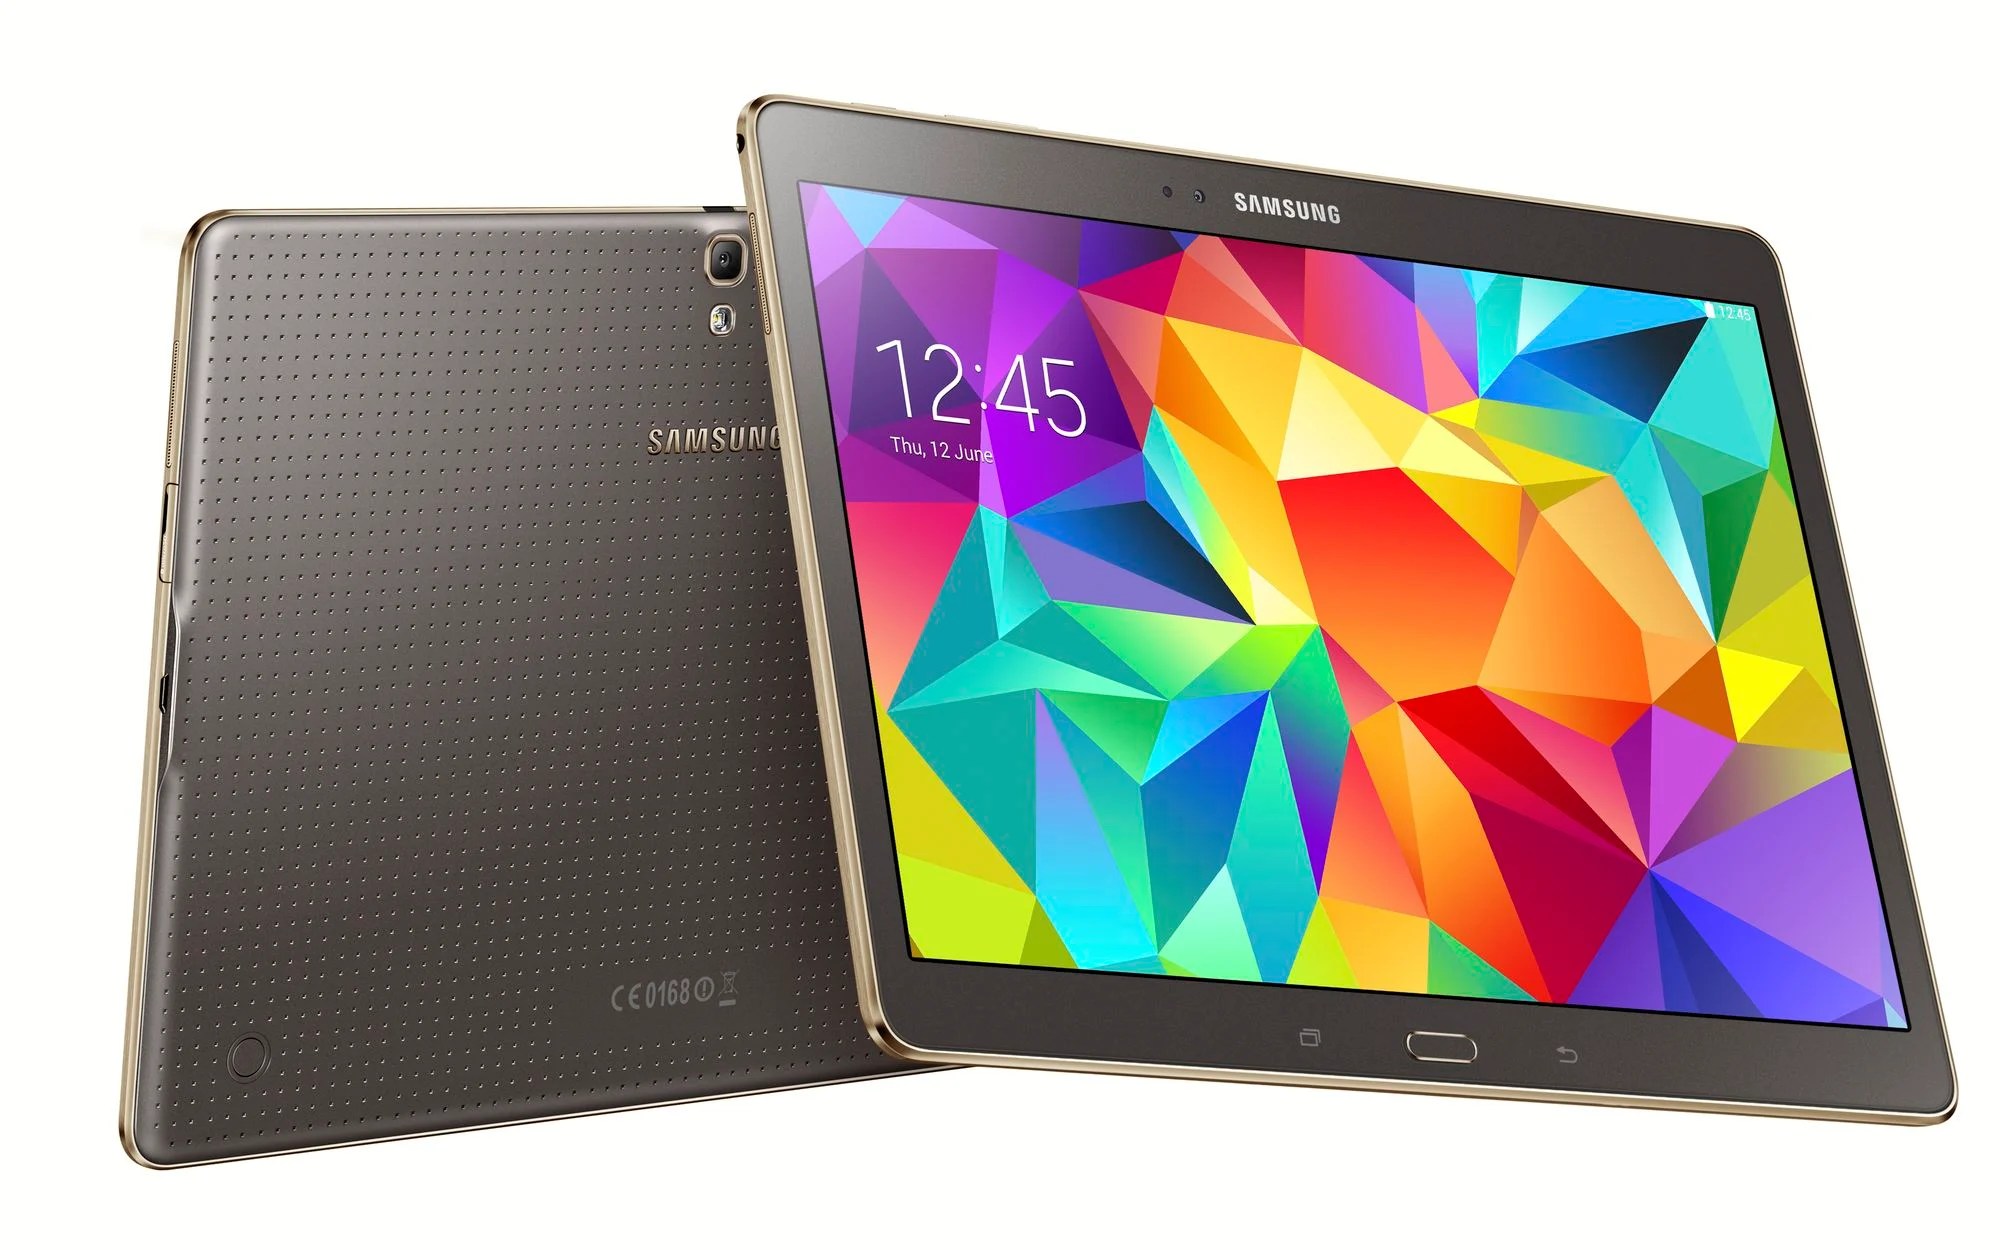 La Galaxy Tab S2 9,7 de Samsung aperçue sur GFXbench